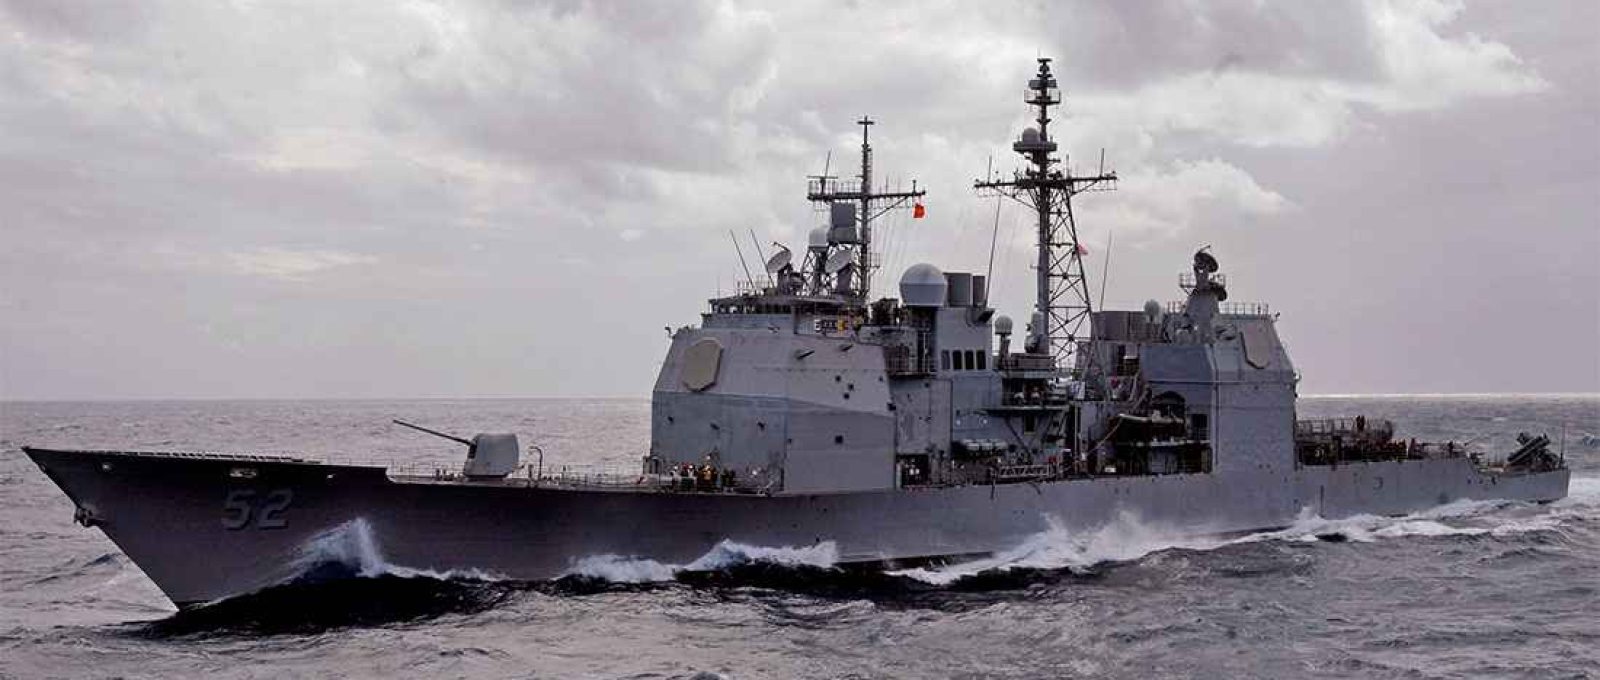 O cruzador USS Bunker Hill, da Marinha dos EUA, navega no Oceano Atlântico durante o exercício Southern Seas, em 4 de março de 2010 (Seaman Aaron Shelley/US Navy).